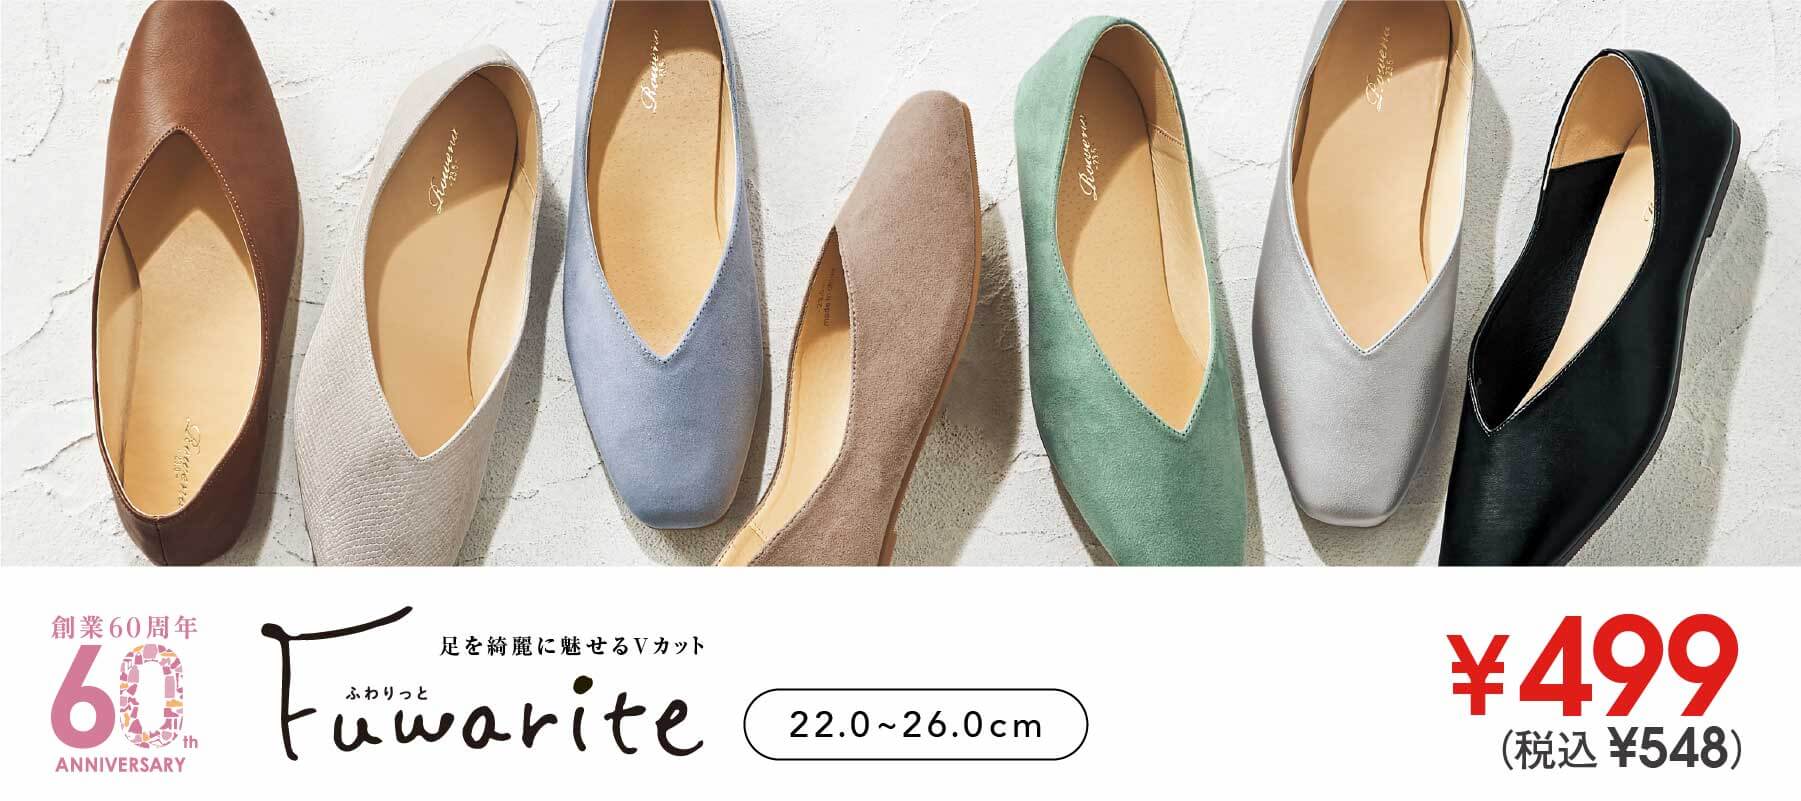 ふわりっと Fuwarite ¥499(税込¥548) 足を綺麗に魅せるVカット 22.0 ~ 26.0cm